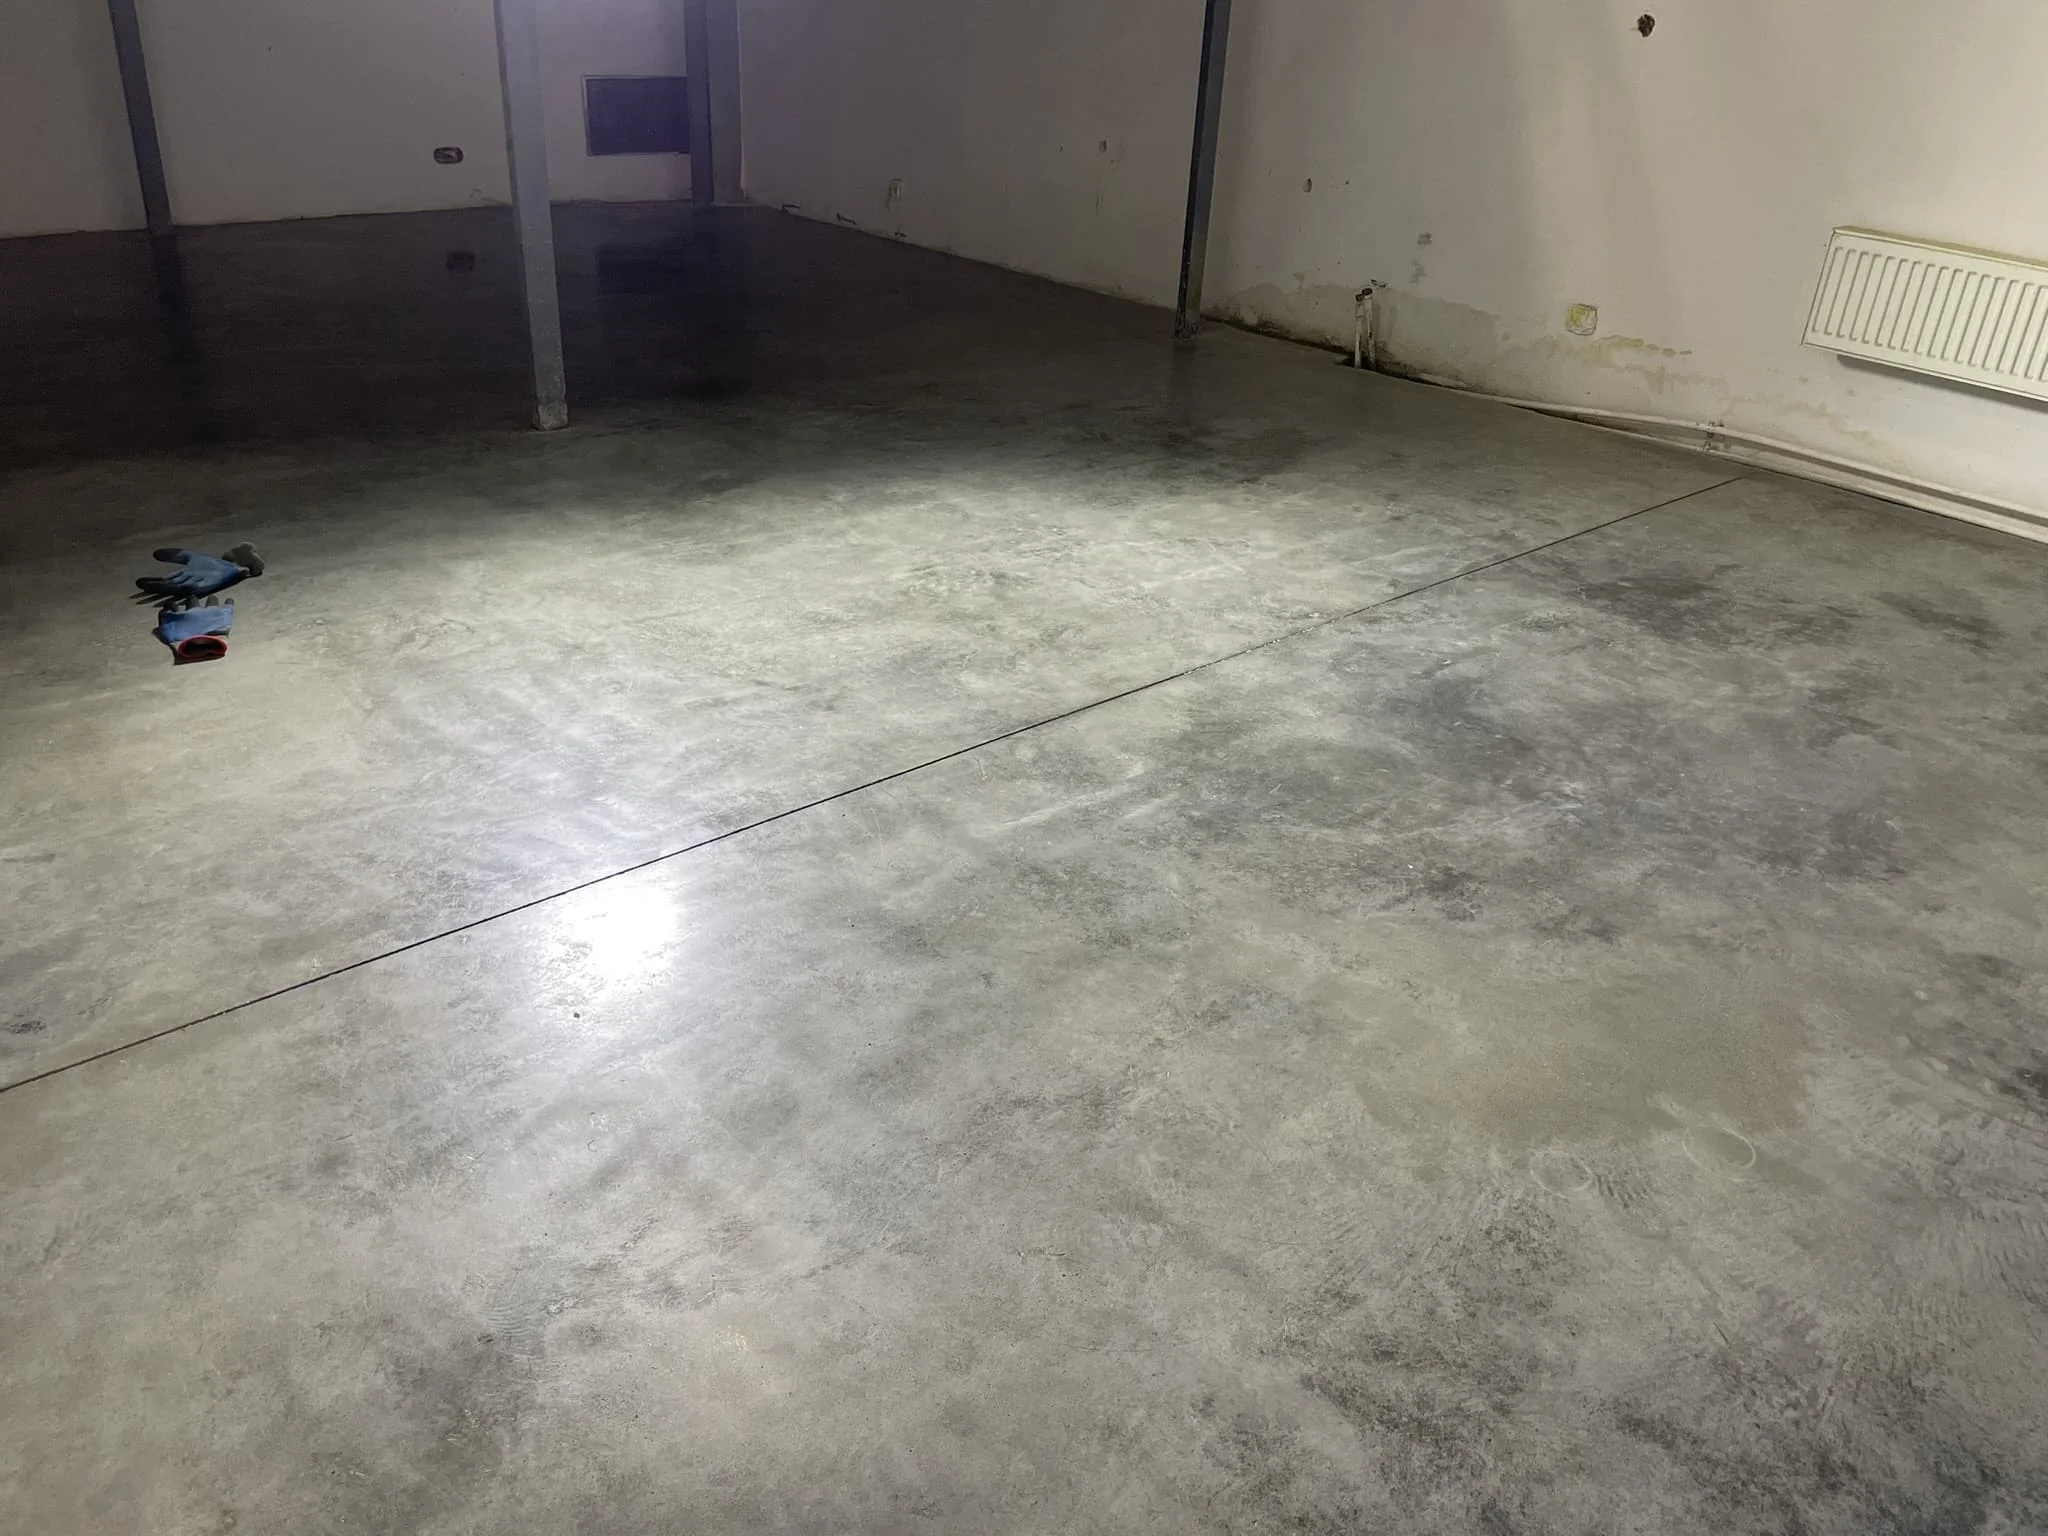 Concrete floor in the apartment